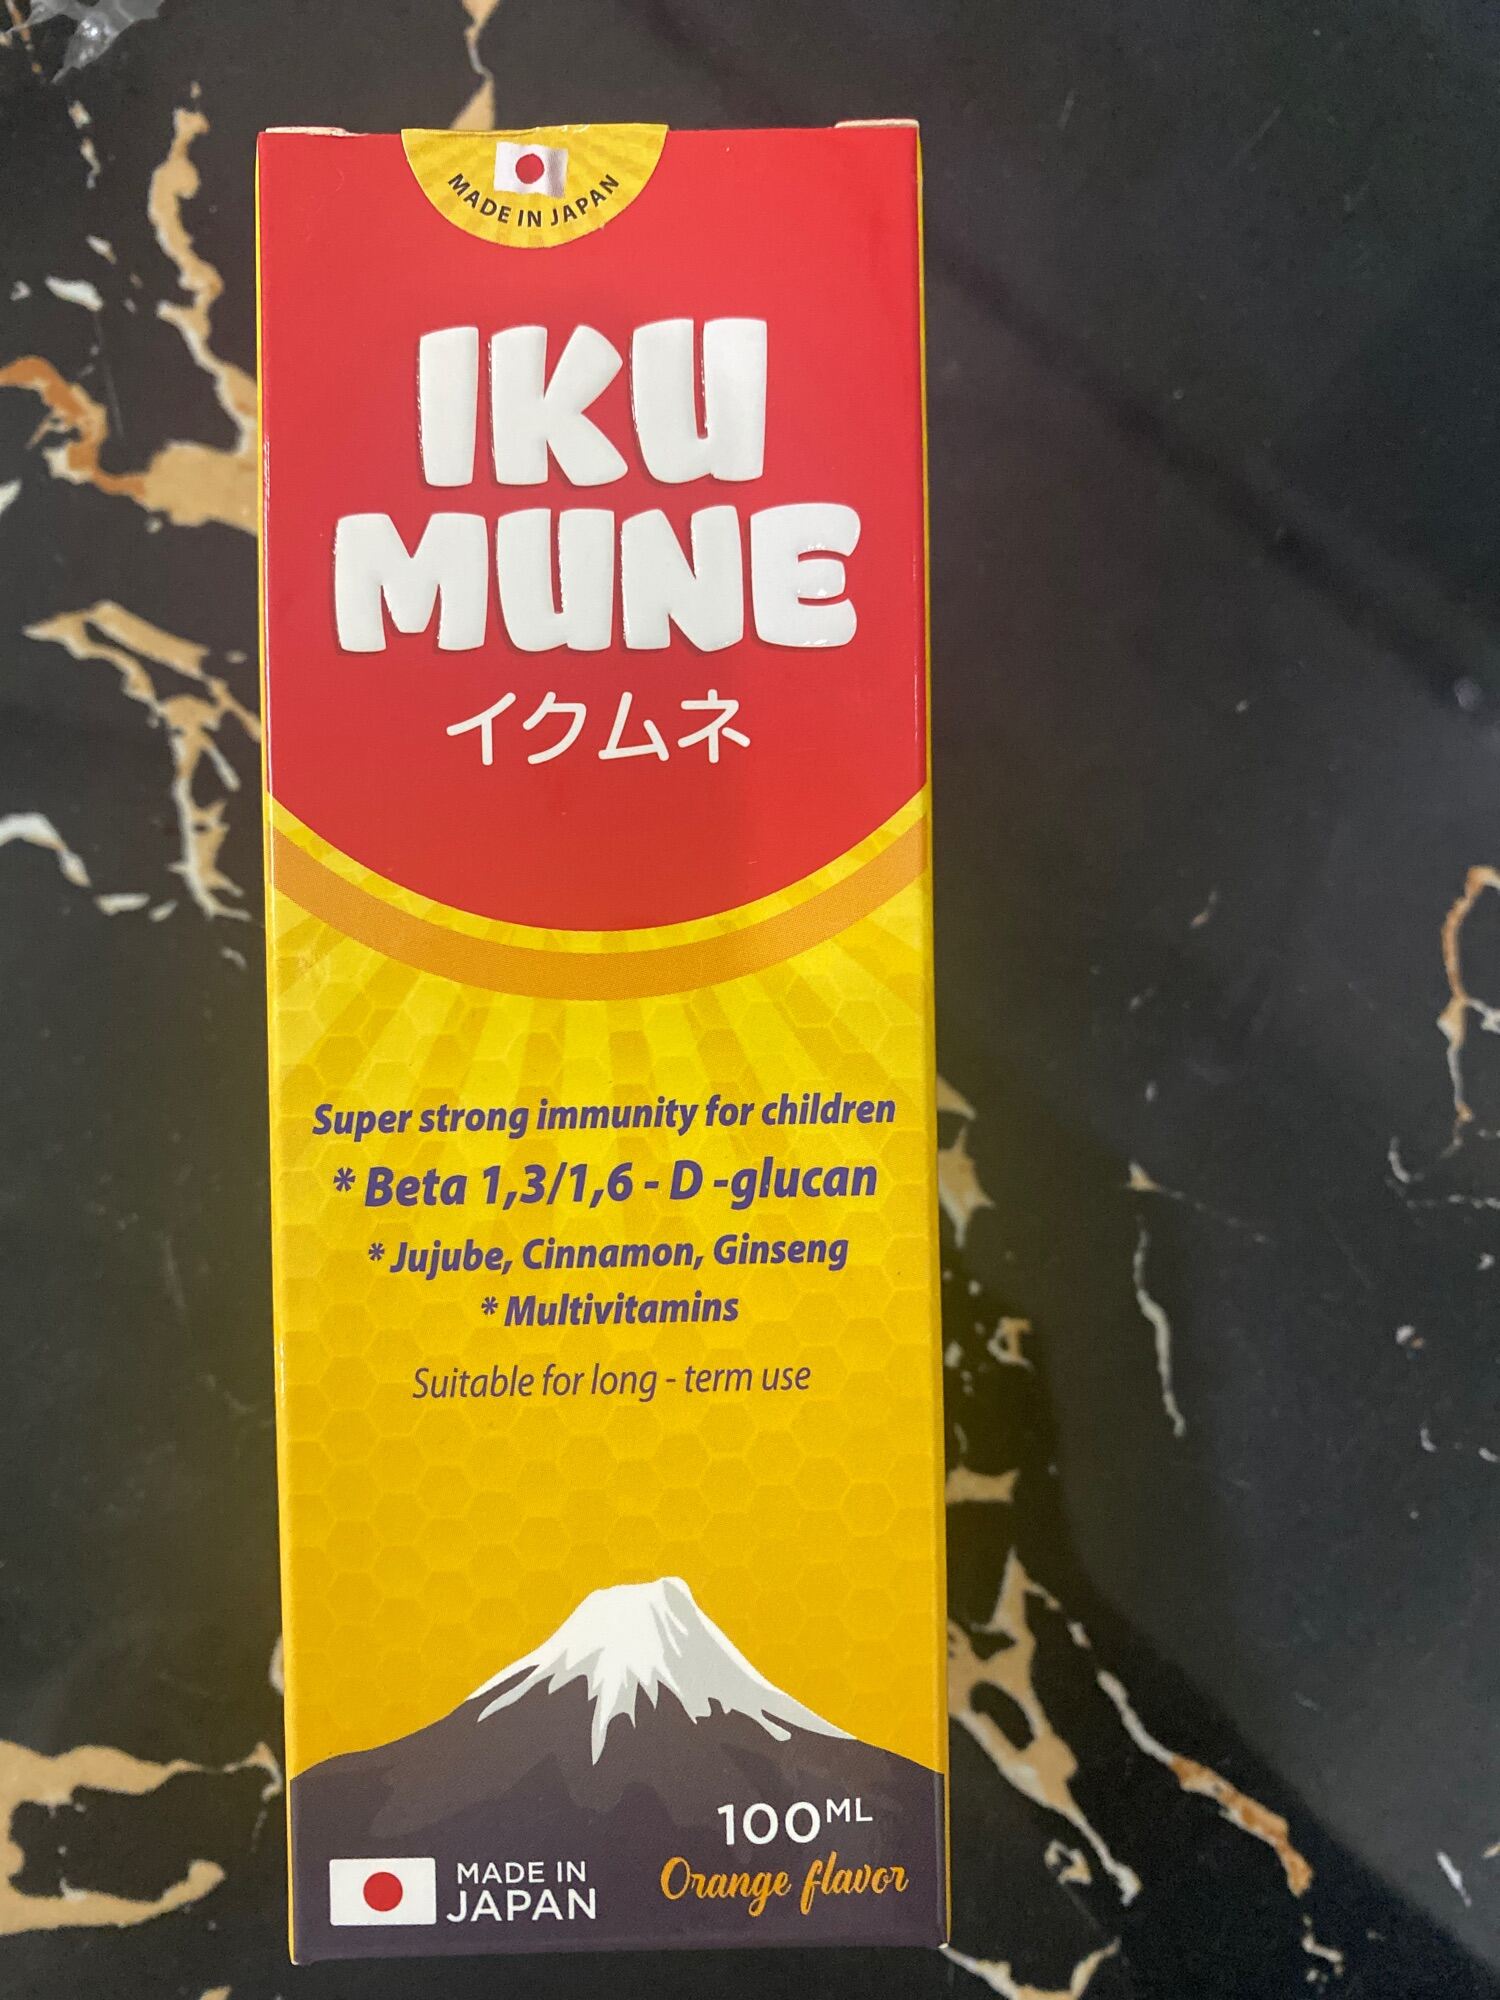 Ikumune made in Japan